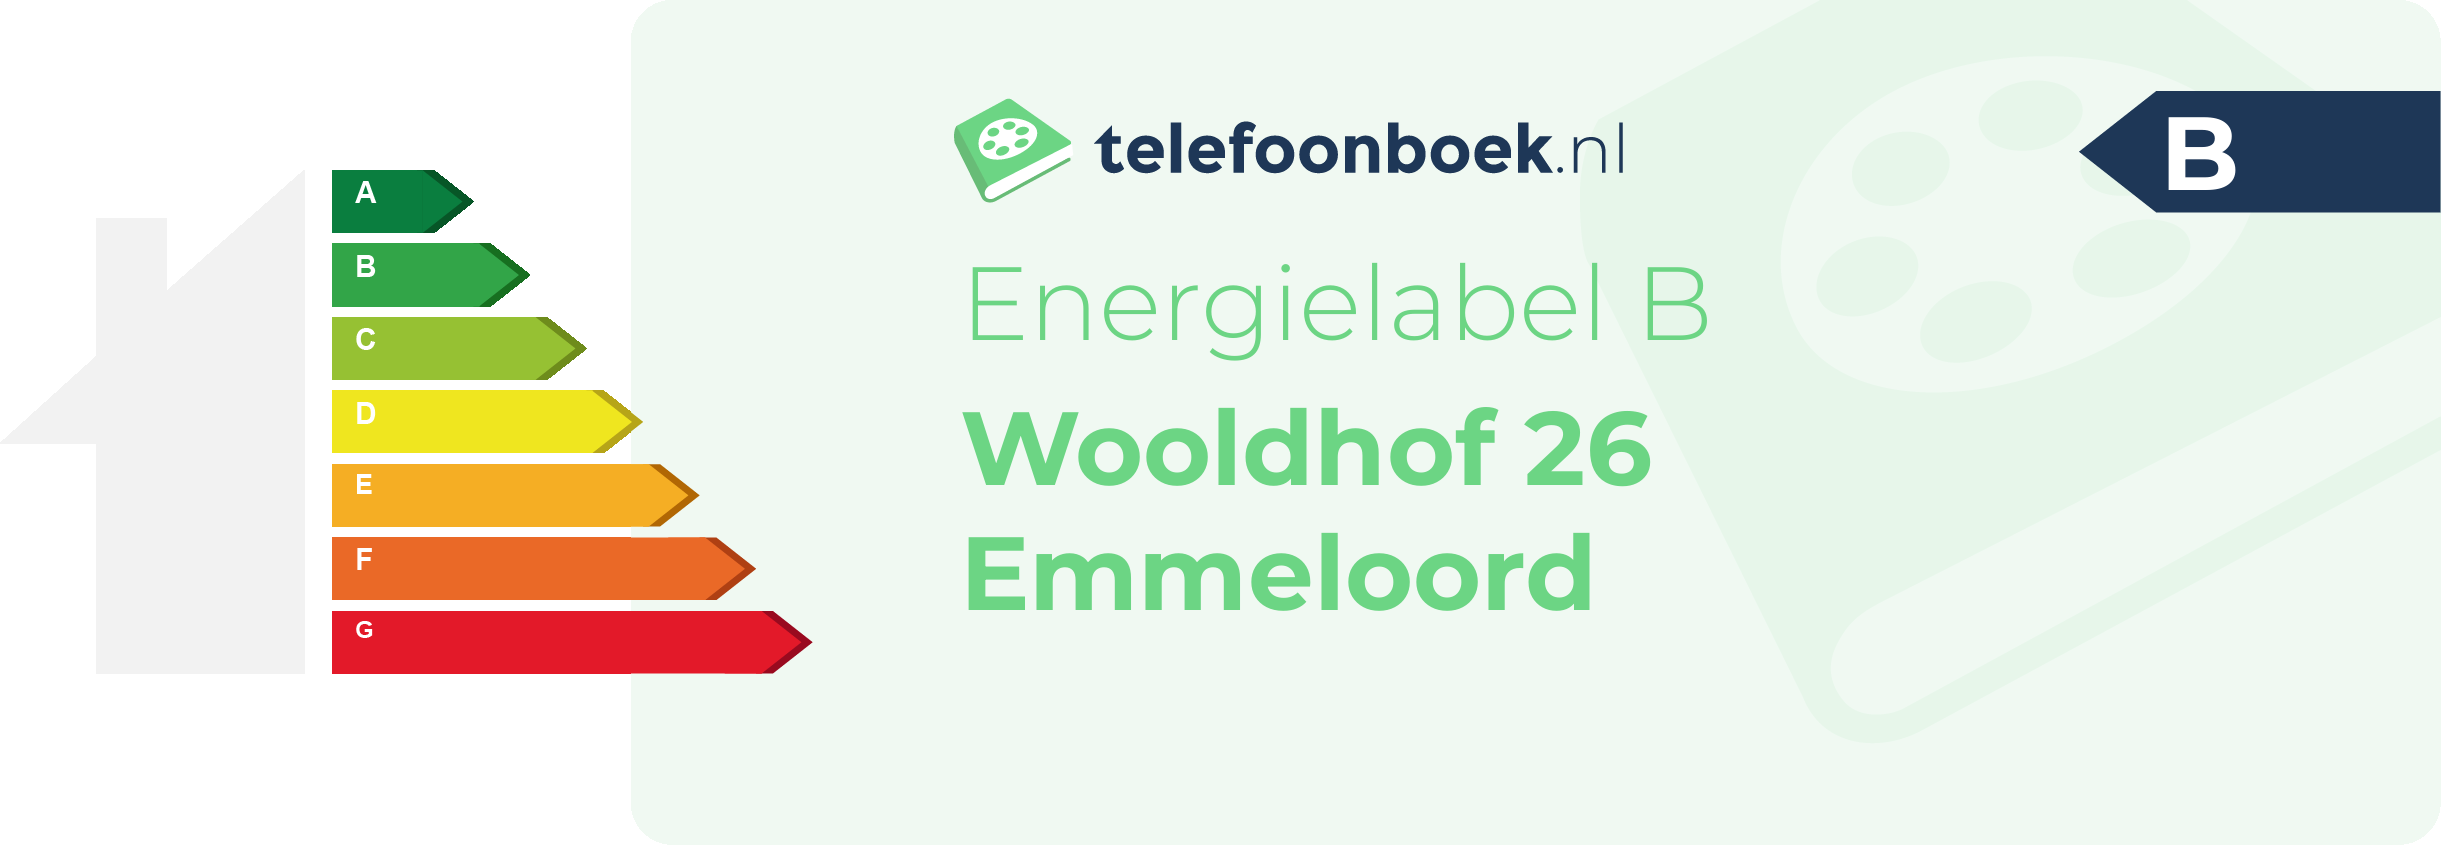 Energielabel Wooldhof 26 Emmeloord